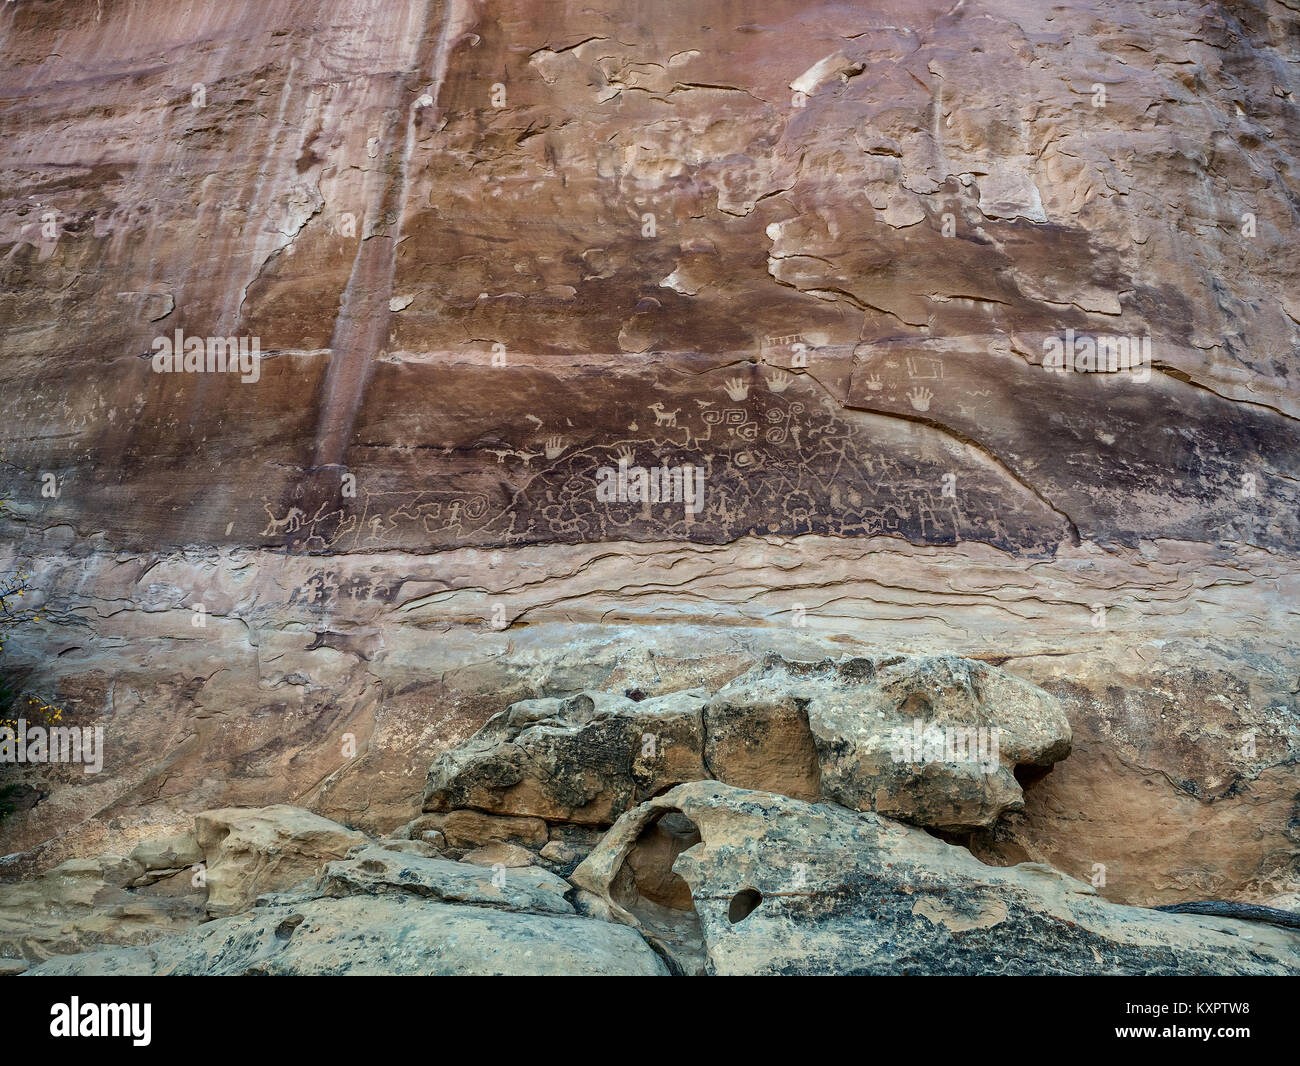 Mesa Verde petroglyphs in Colorado, USA Stock Photo